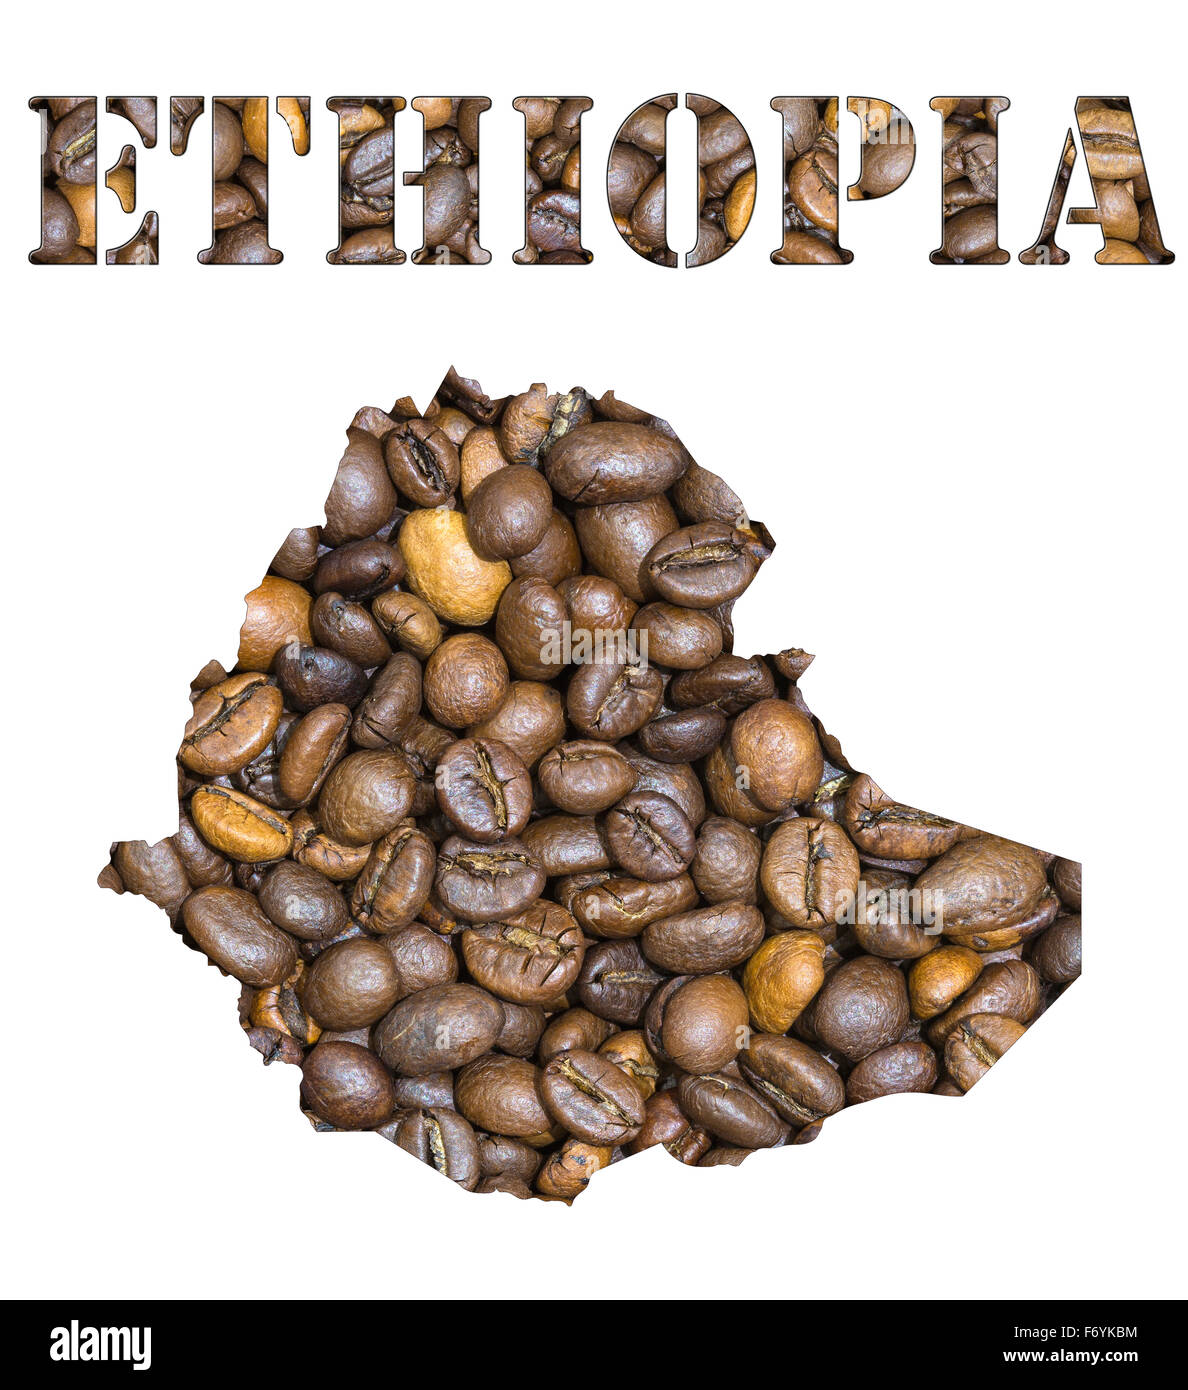 Gerösteten braunen Kaffeebohnen Hintergrund mit der Form des Wort-Äthiopien und dem Land Landkarte Umriss. Bild-isolat Stockfoto